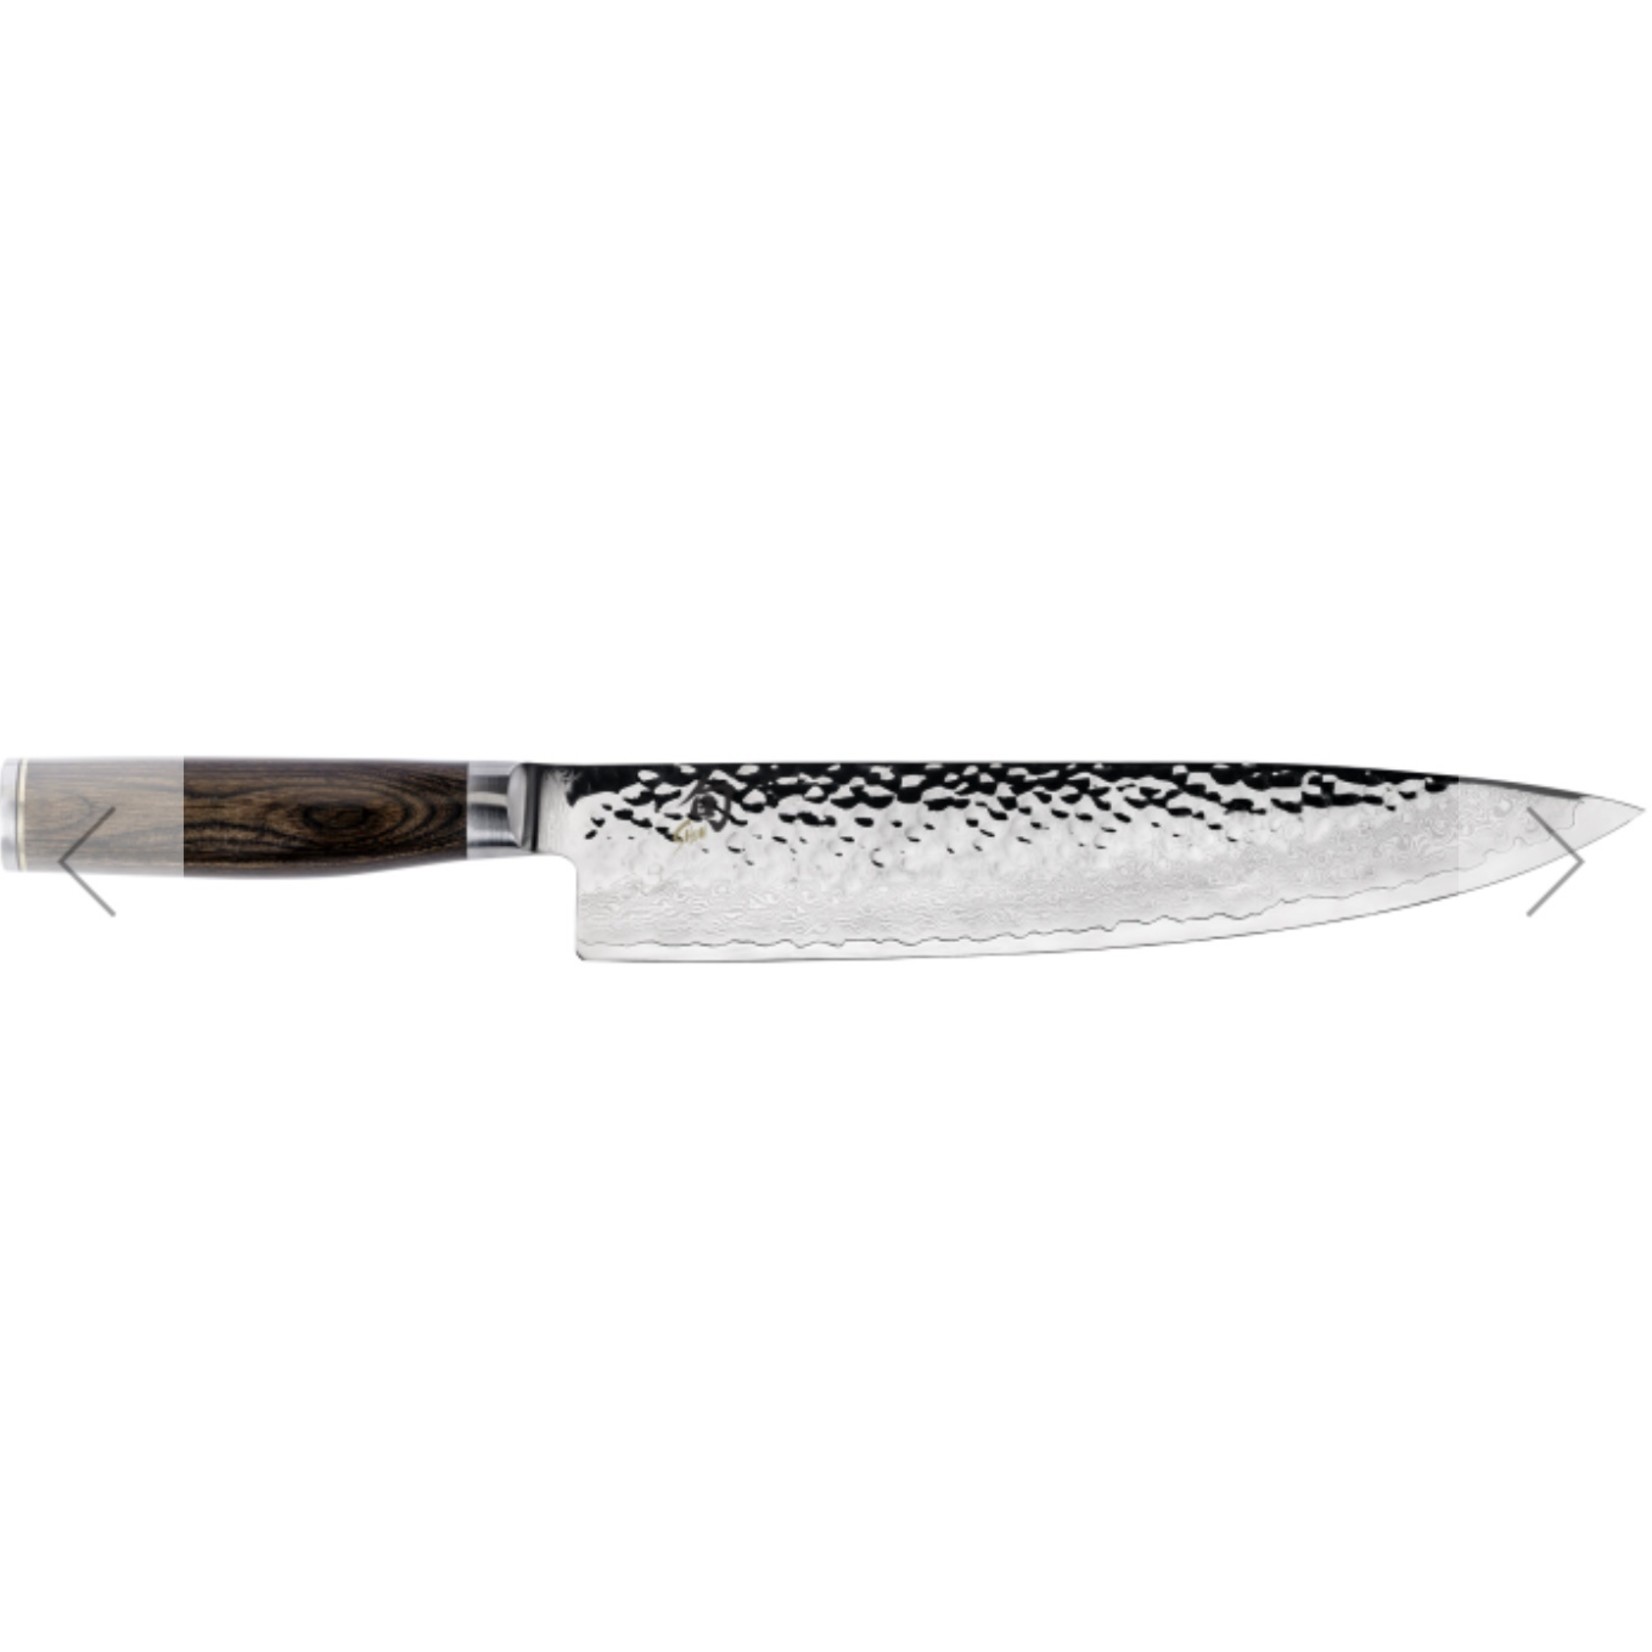 SHUN SHUN Premier Chef's Knife 10"